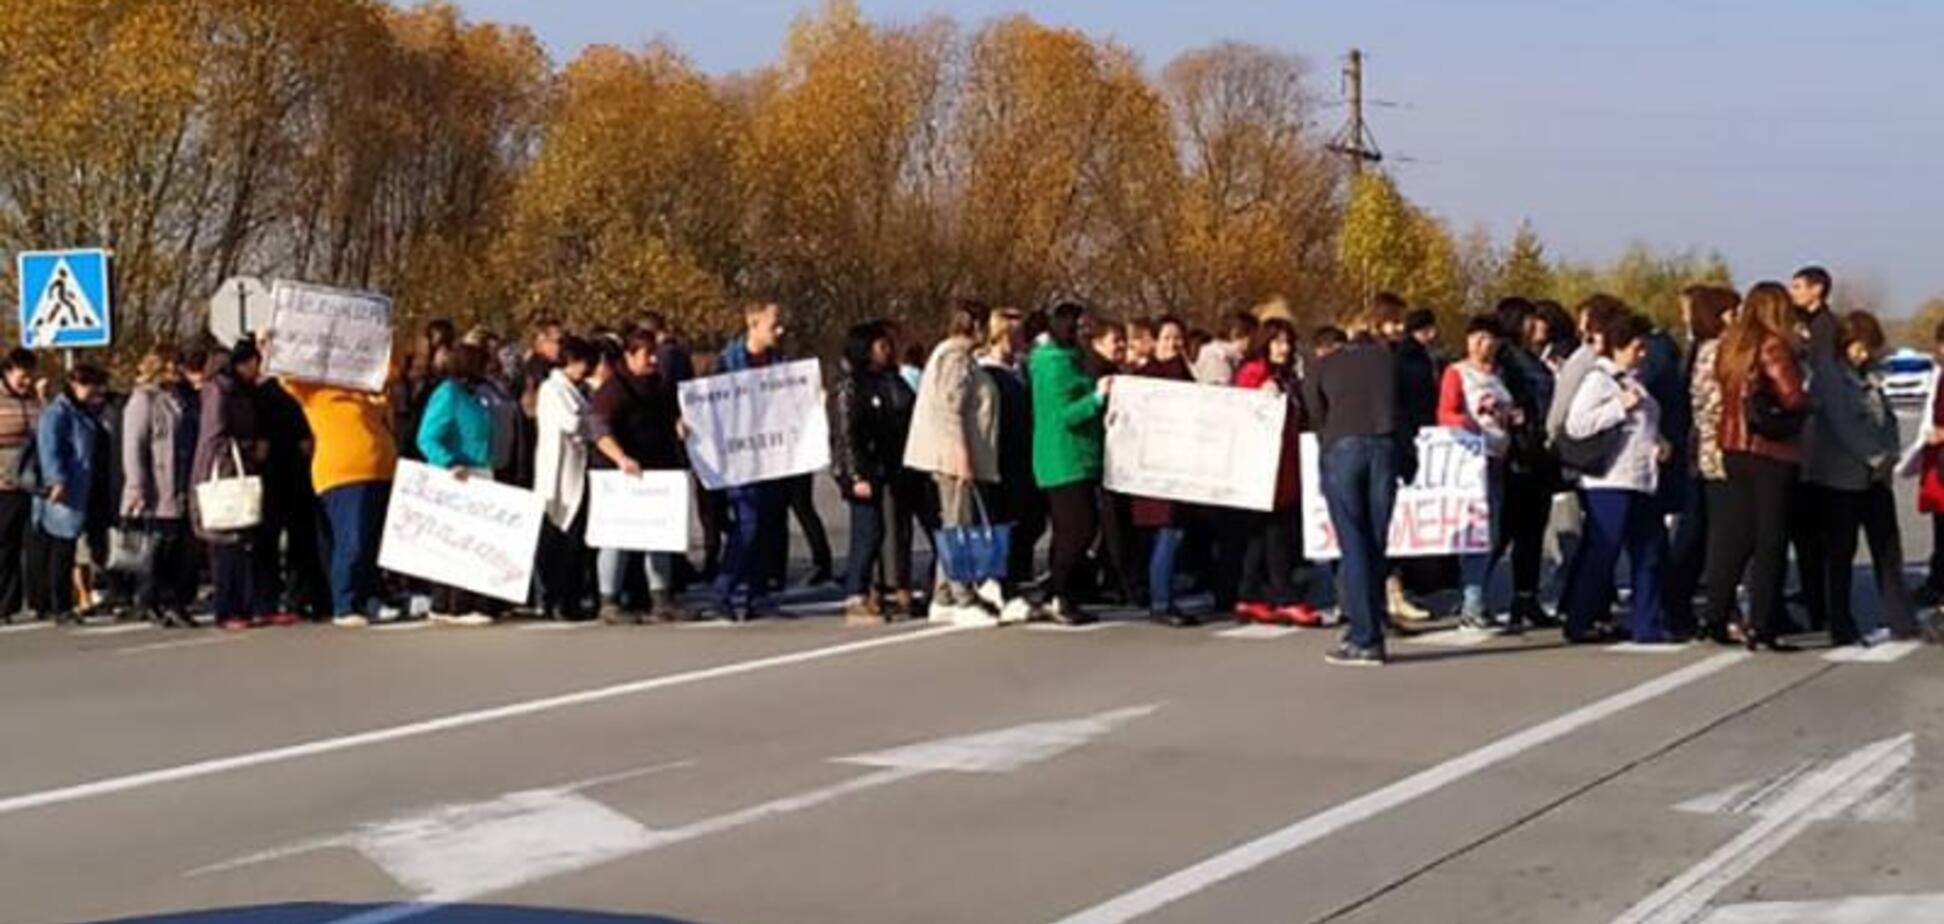 Учителя перекрыли дорогу под Житомиром из-за проблем с зарплатами